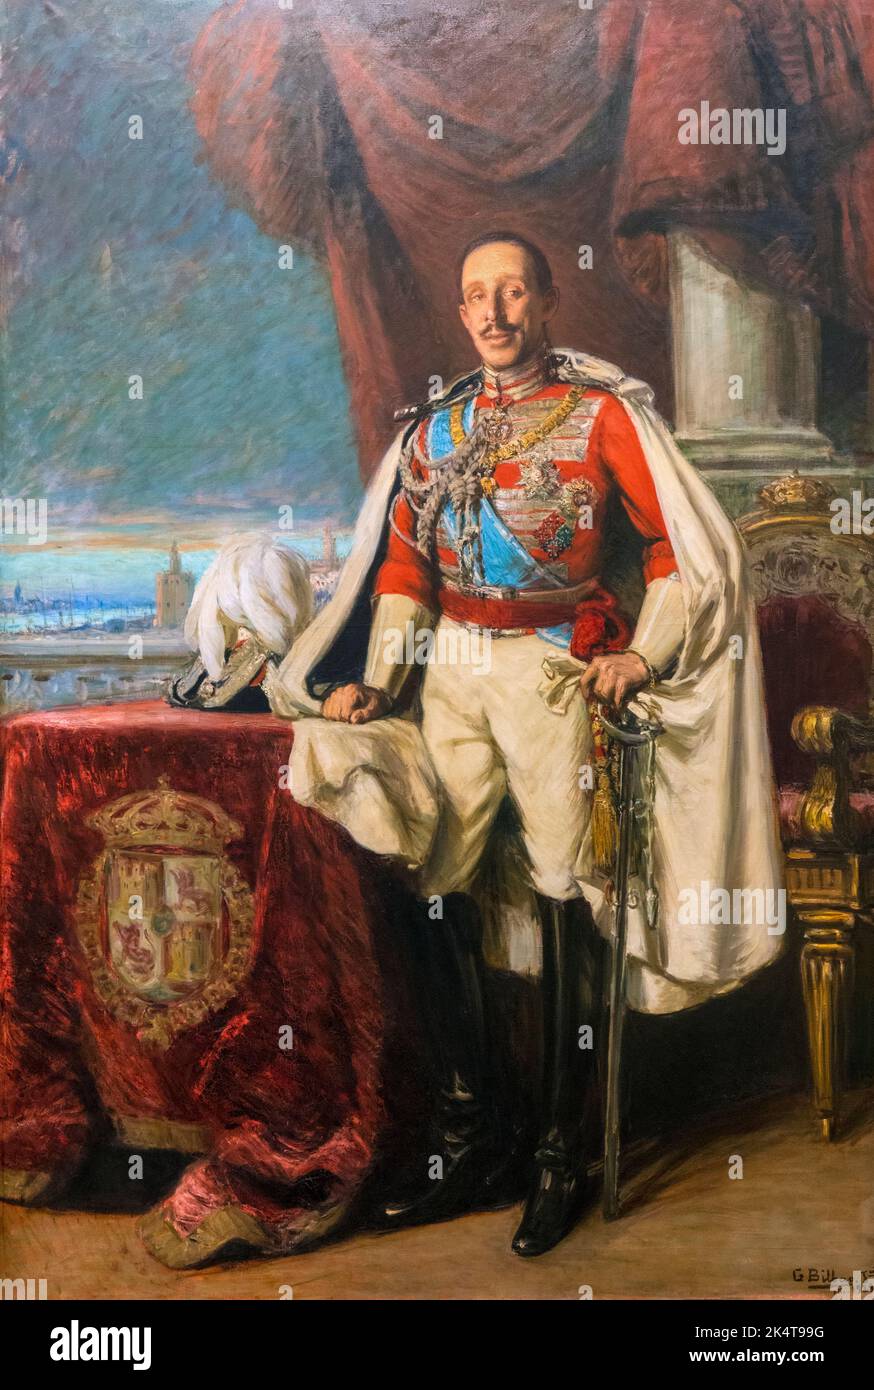 Porträt des spanischen Königs Alfonso XIII., 1886 - 1941, vom spanischen Künstler Gonzalo Bilbao Martínez, 1860 - 1938. Ausgestellt im Museo de Belles Artes/ Stockfoto